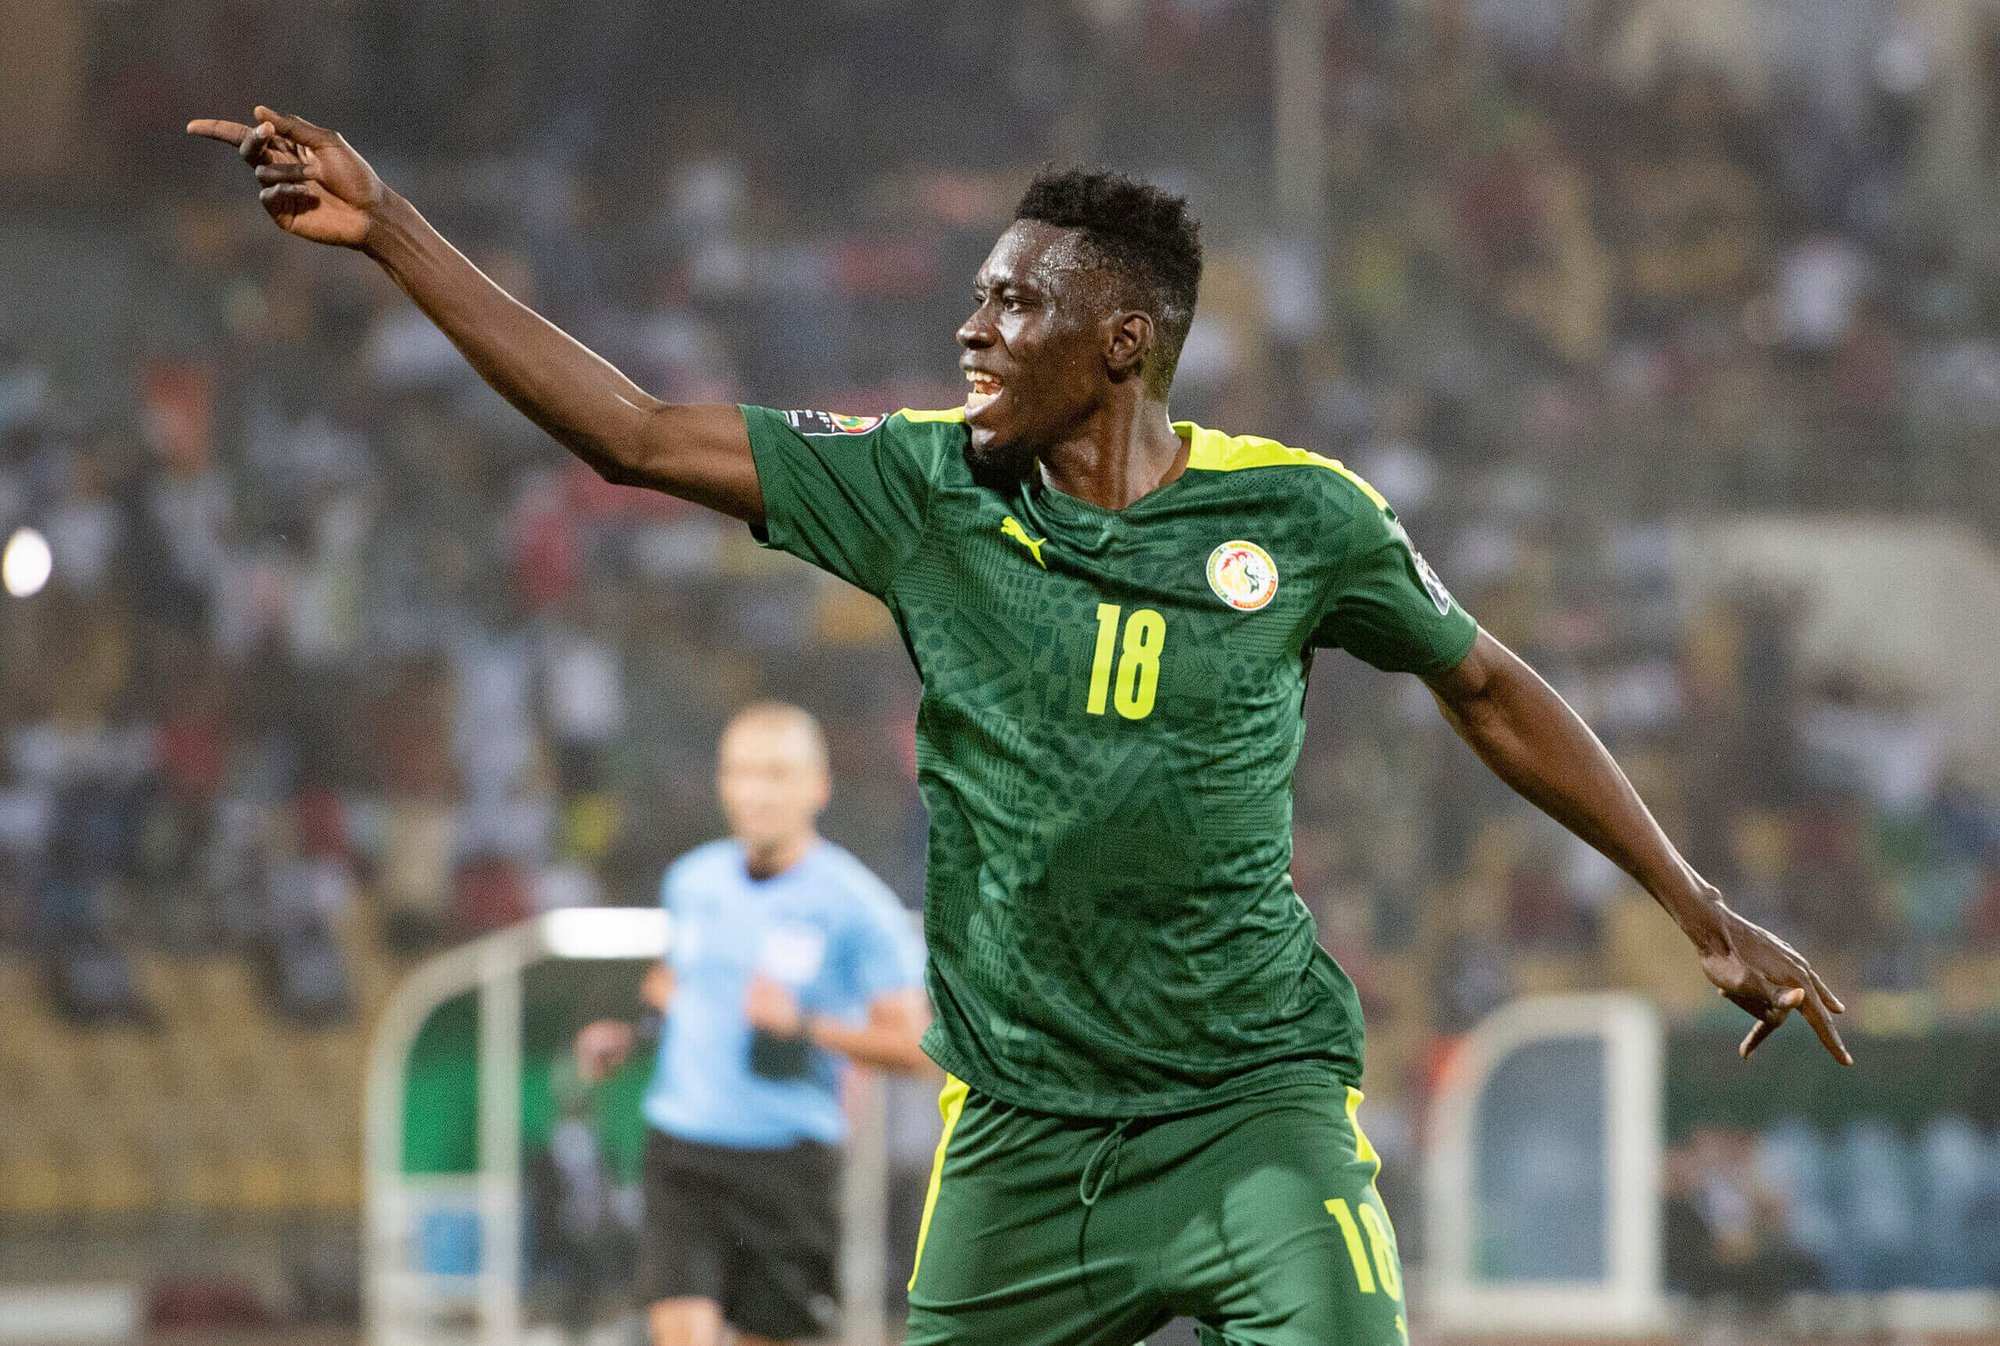 CHÍNH THỨC: Sadio Mane bỏ lỡ World Cup 2022 vì chấn thương nặng - Ảnh 2.